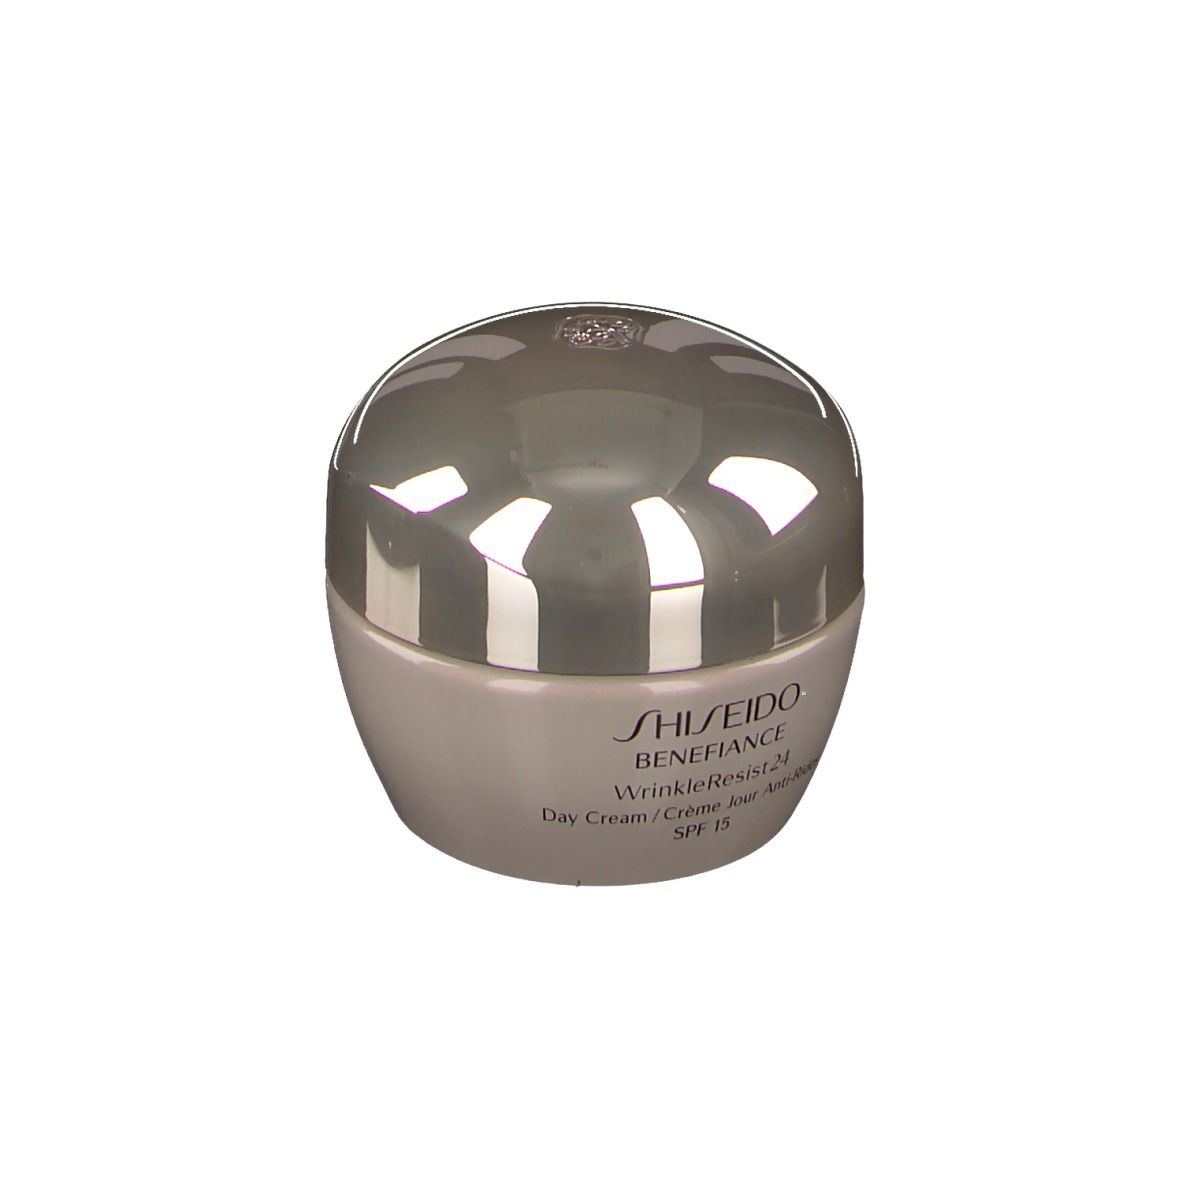 Shiseido Benefiance WrinkleResist24 Day Cream SPF 15